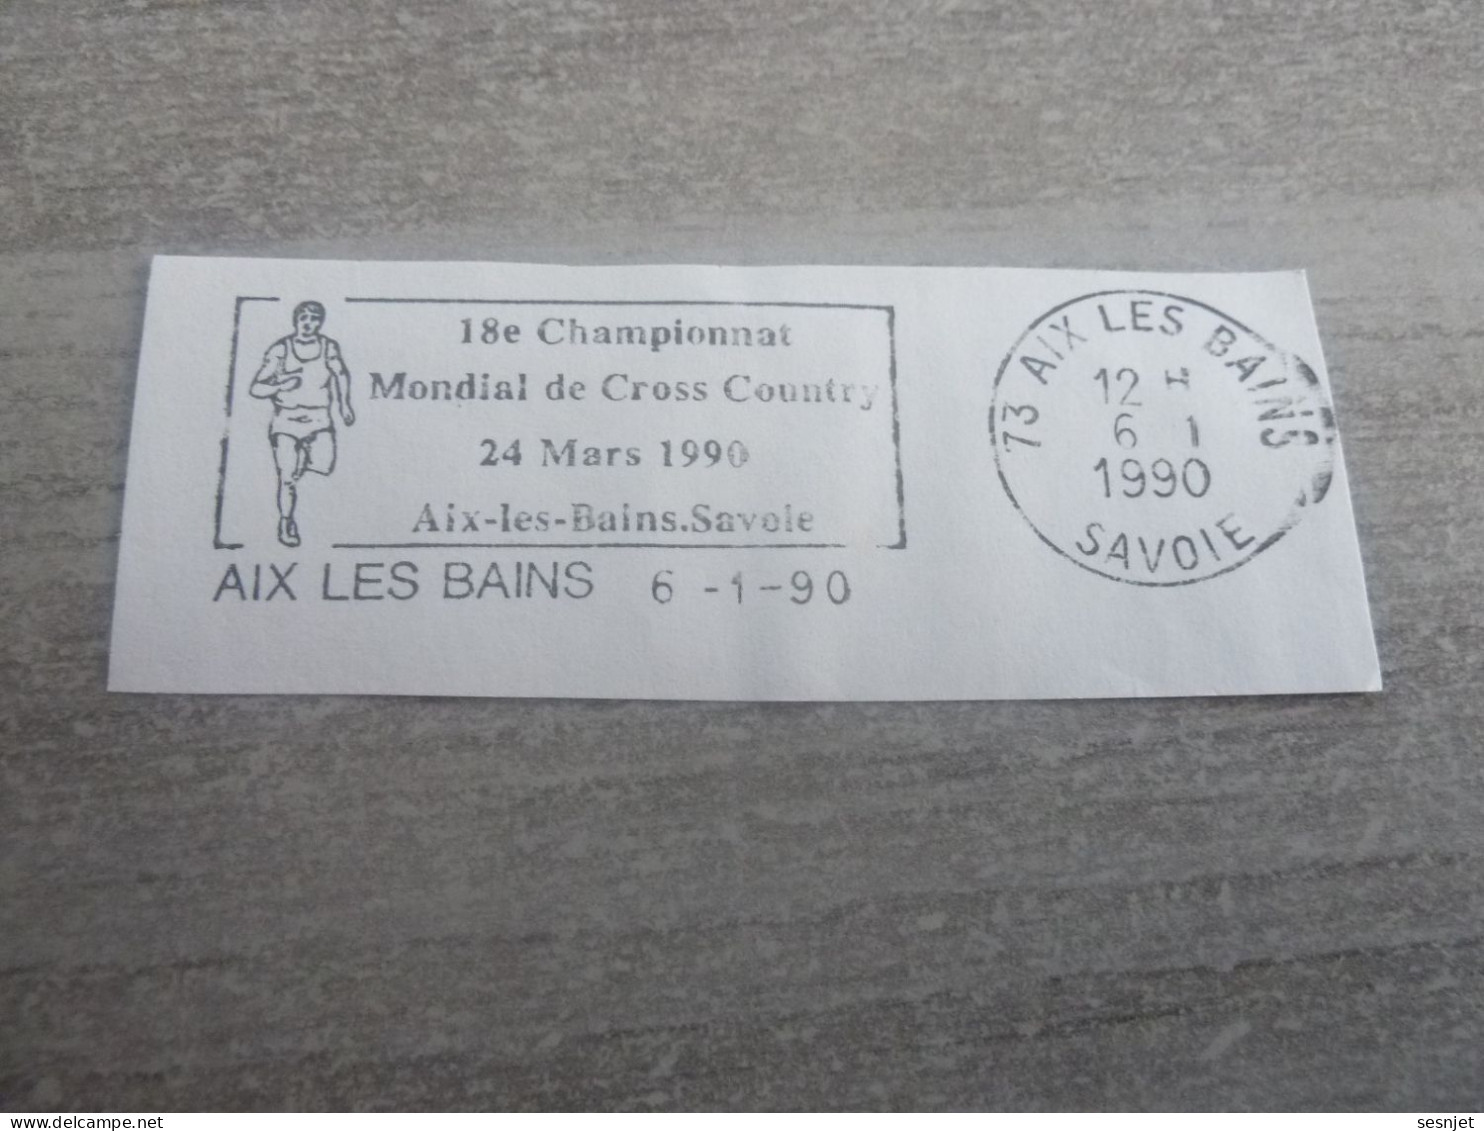 Aix-les-Bains - 18ème Championnat Mondial De Cross Country - Flamme Philatélique - Année 1990 - - Used Stamps